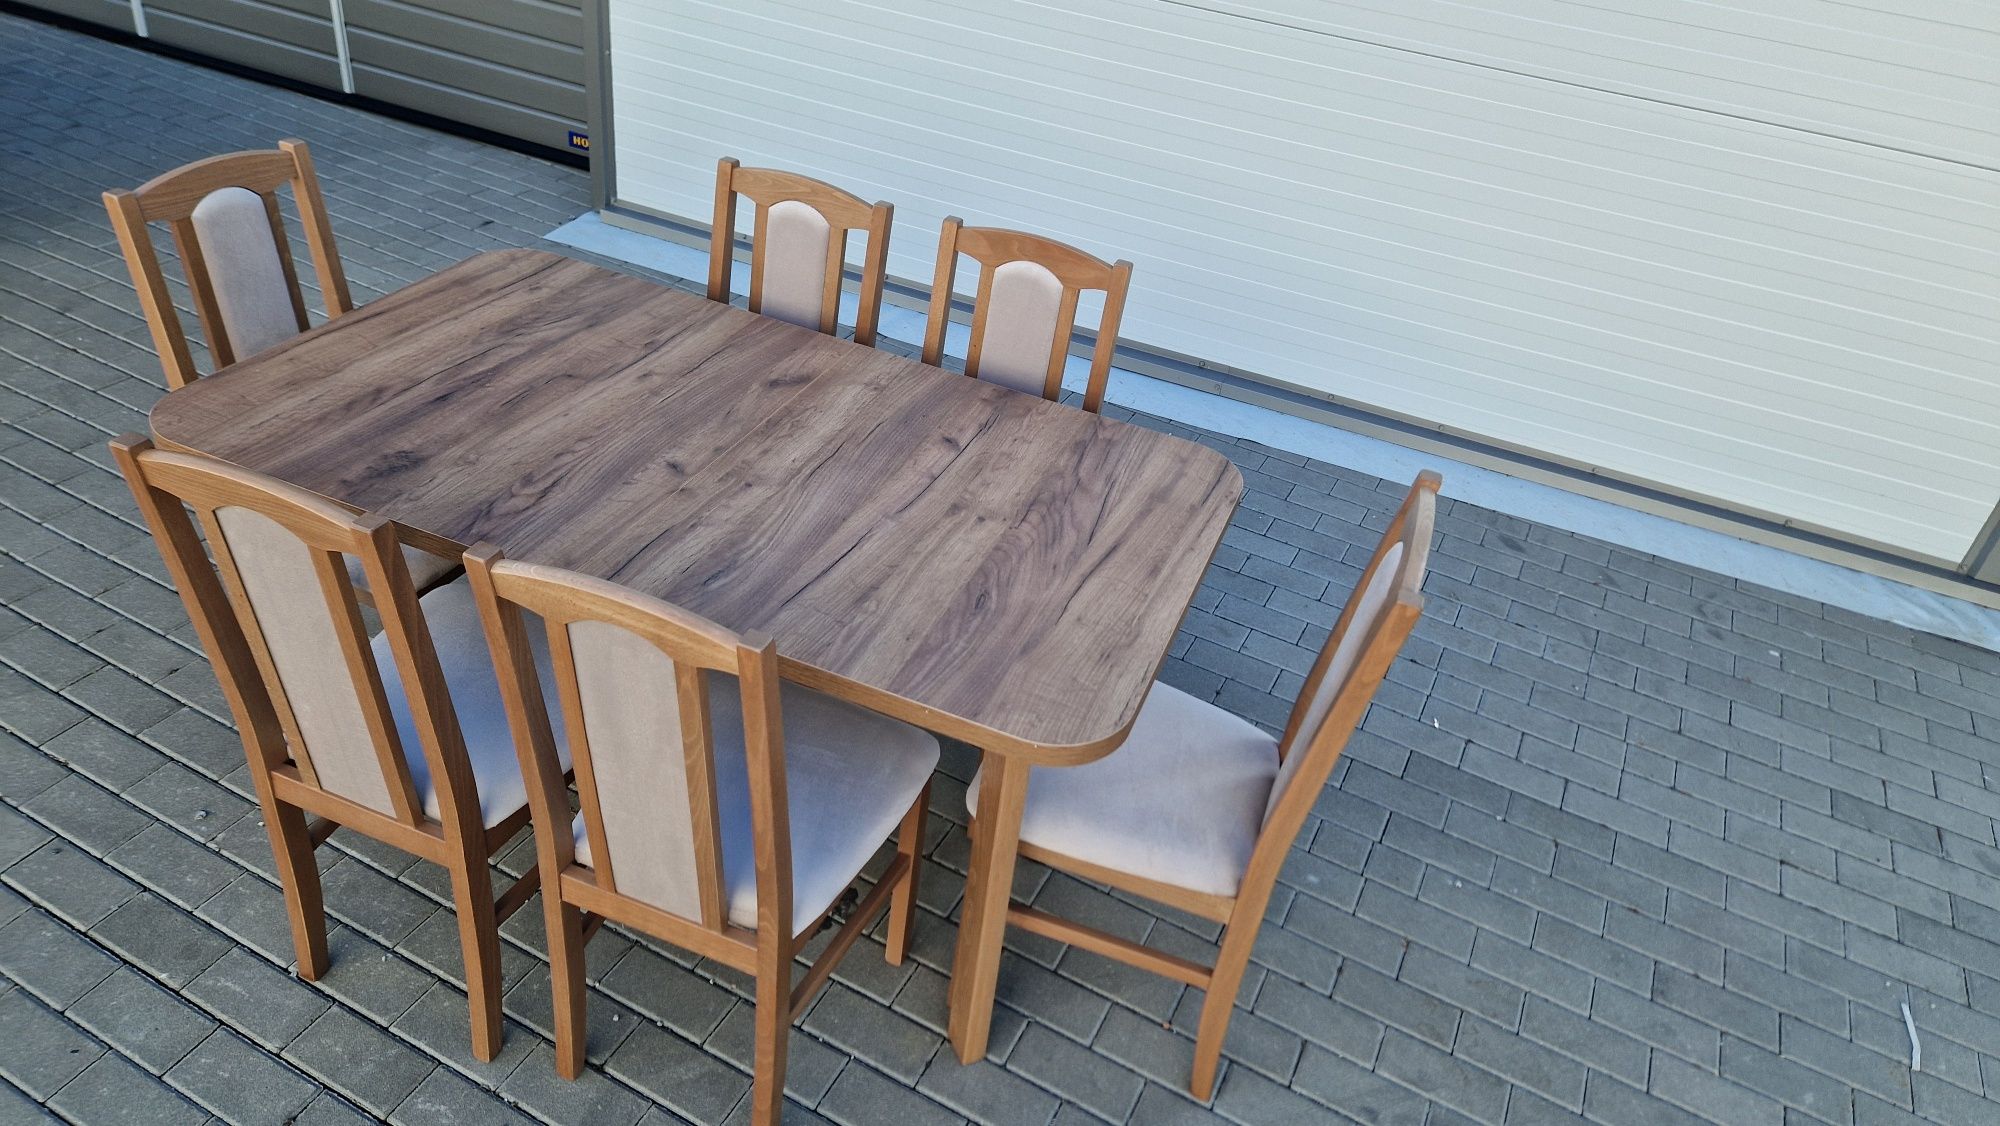 Nowe: Stół 80x140/180 + 6 krzeseł, ORZECH JASNY + LATTE,dostawa całaPL